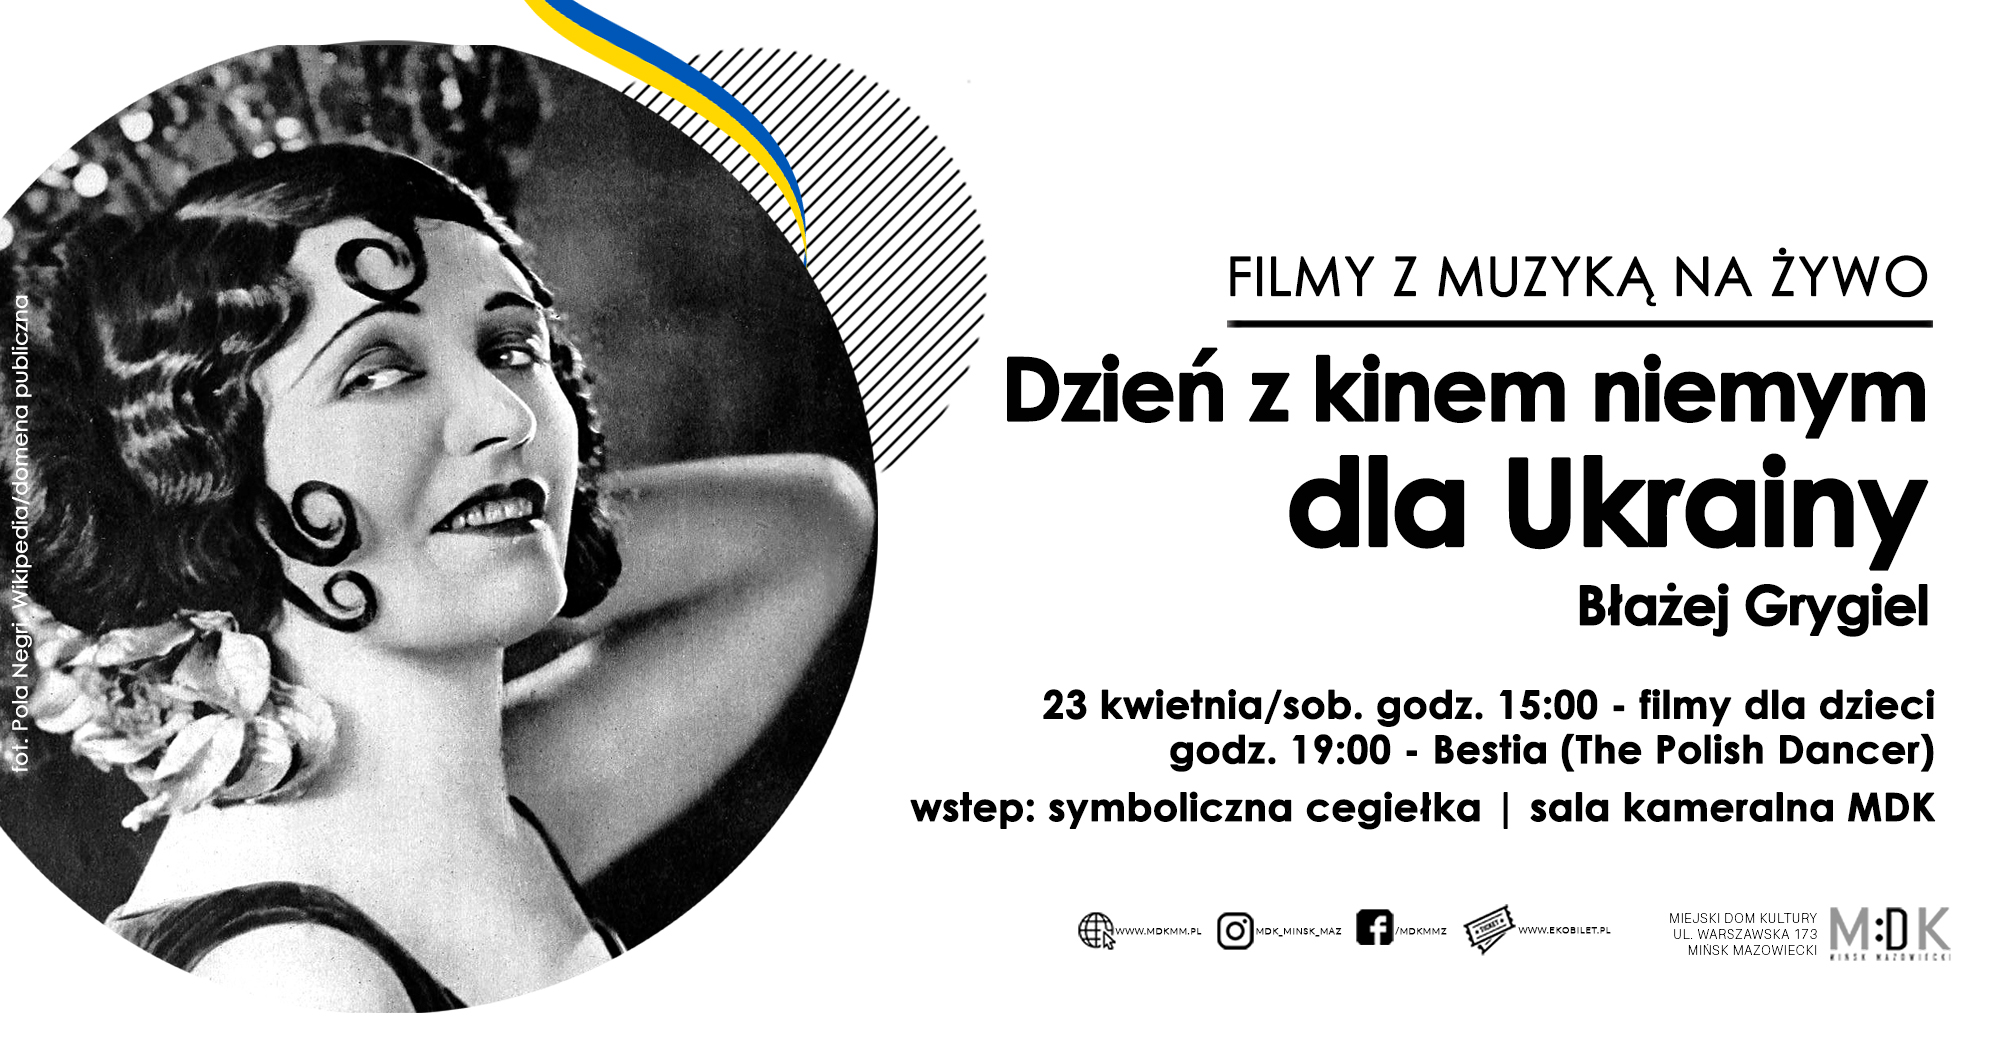 Dzień z kinem niemym dla Ukrainy w MDK